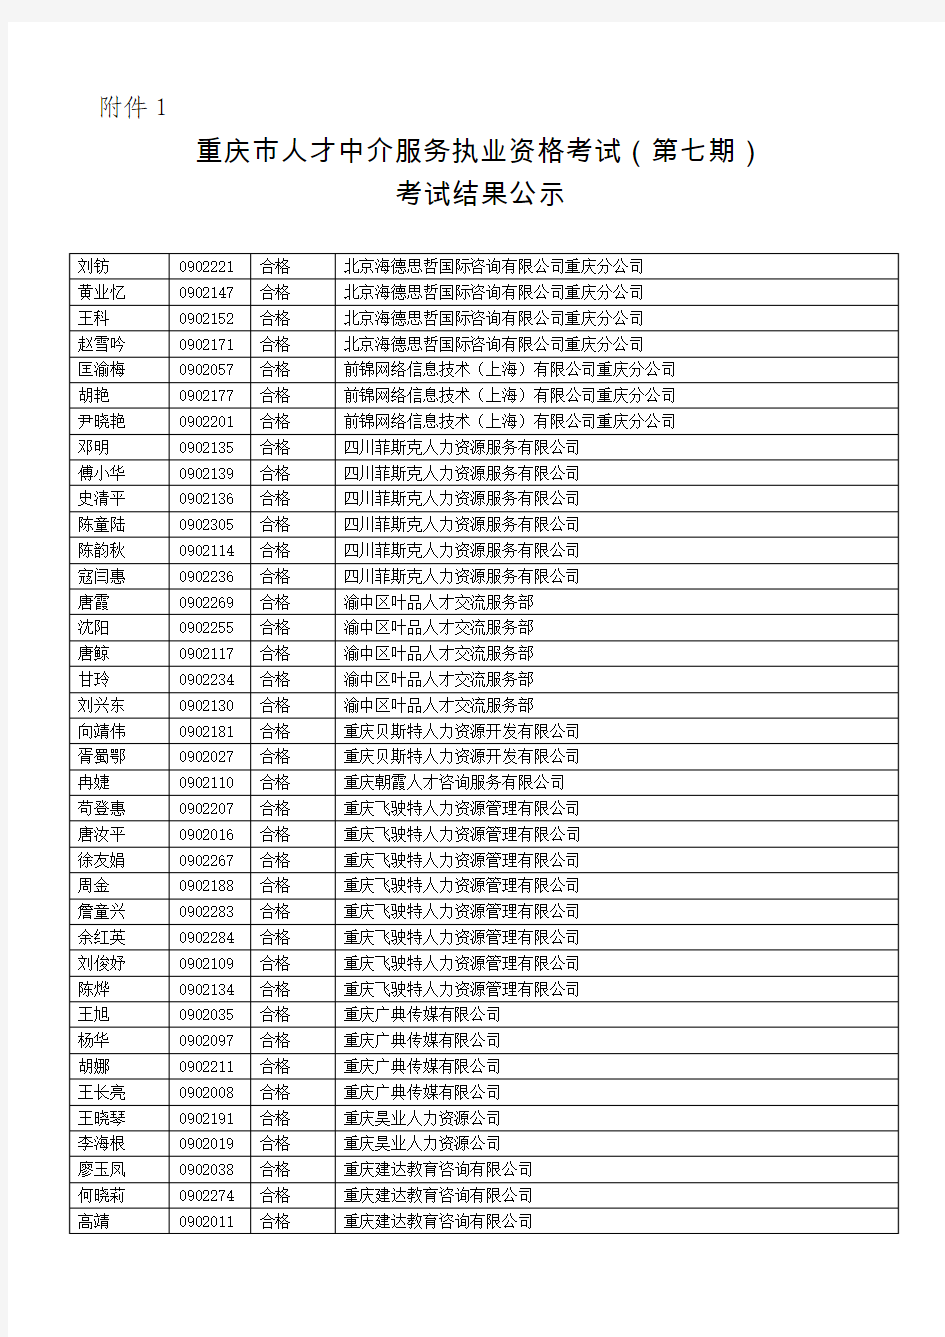 重庆市人才中介服务执业资格考试(第七期)